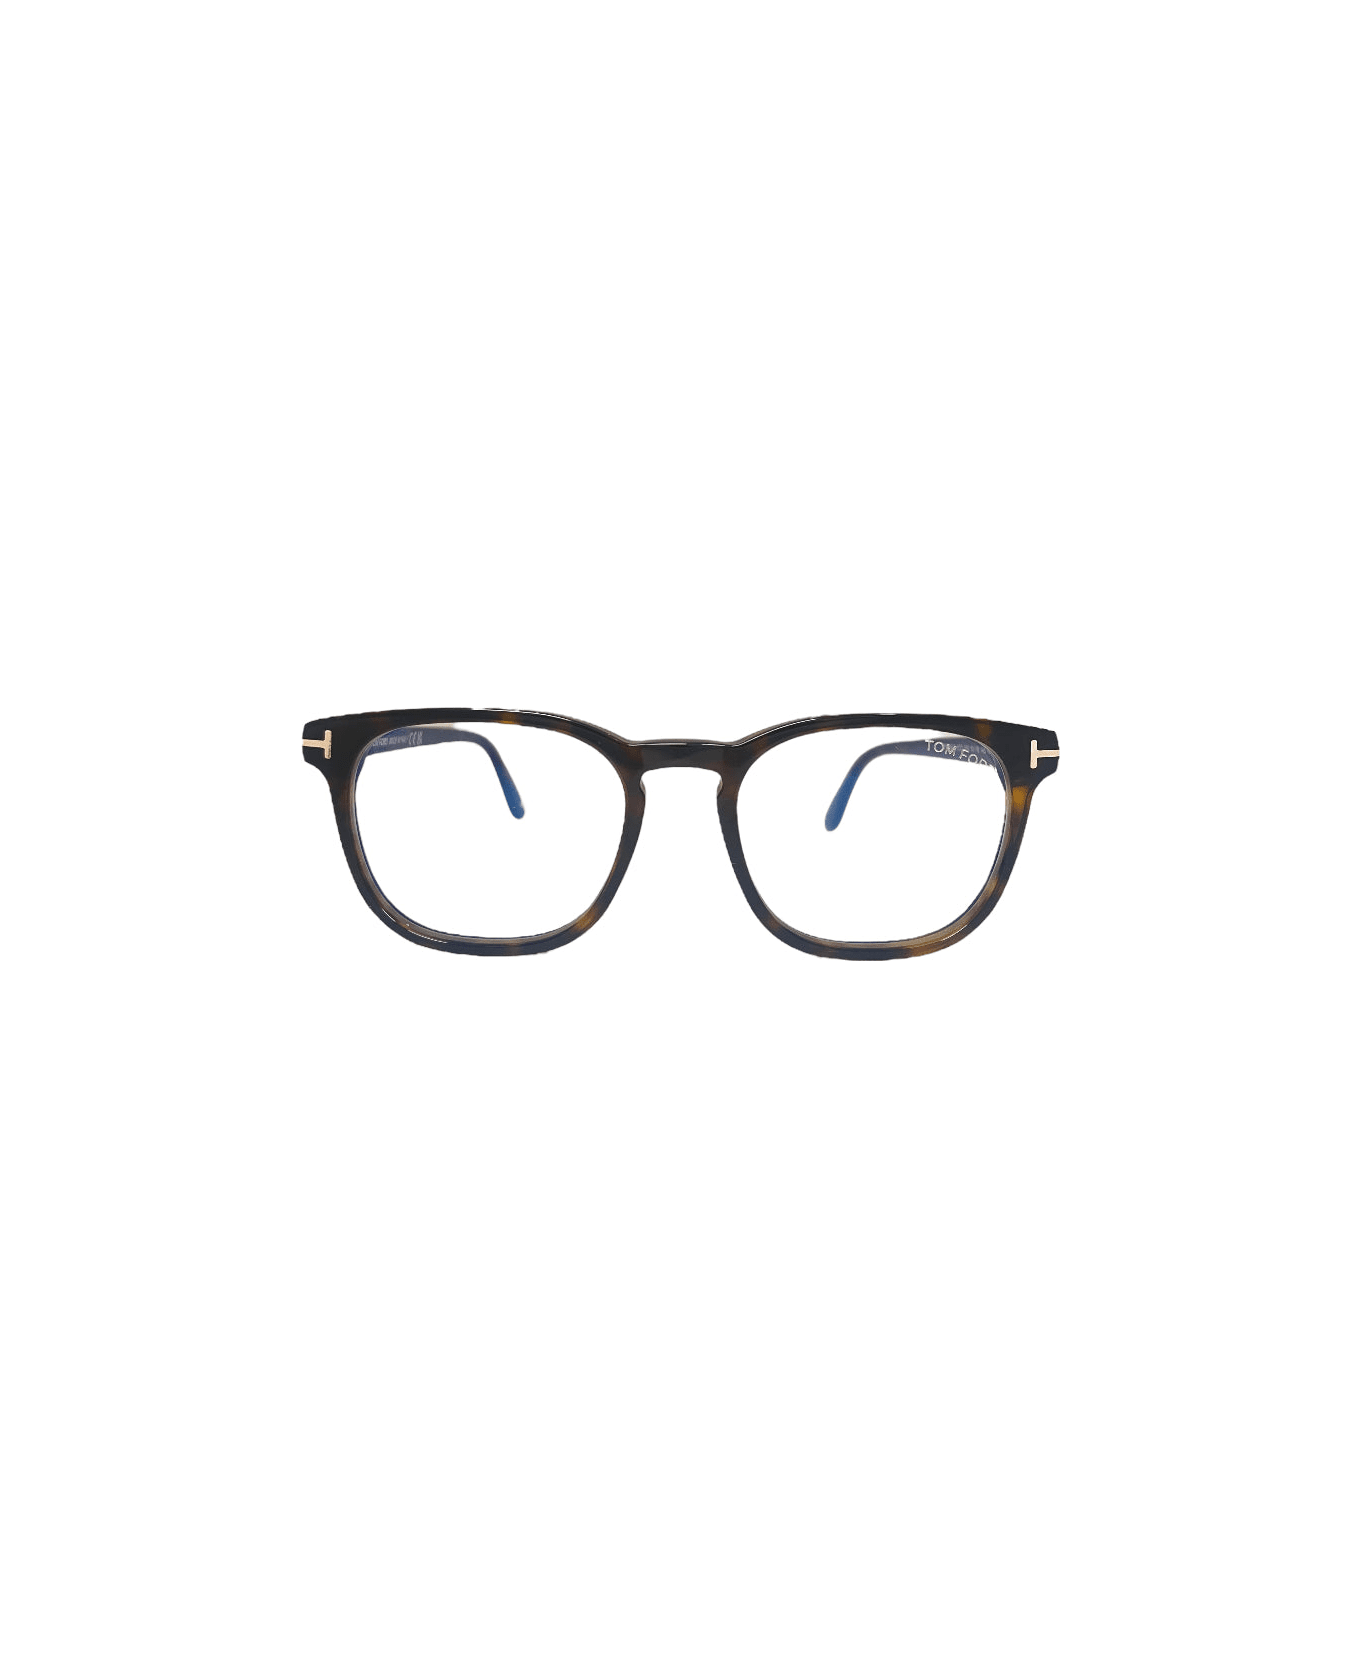 Tom Ford Eyewear Ft5868 - Havana Glasses アイウェア